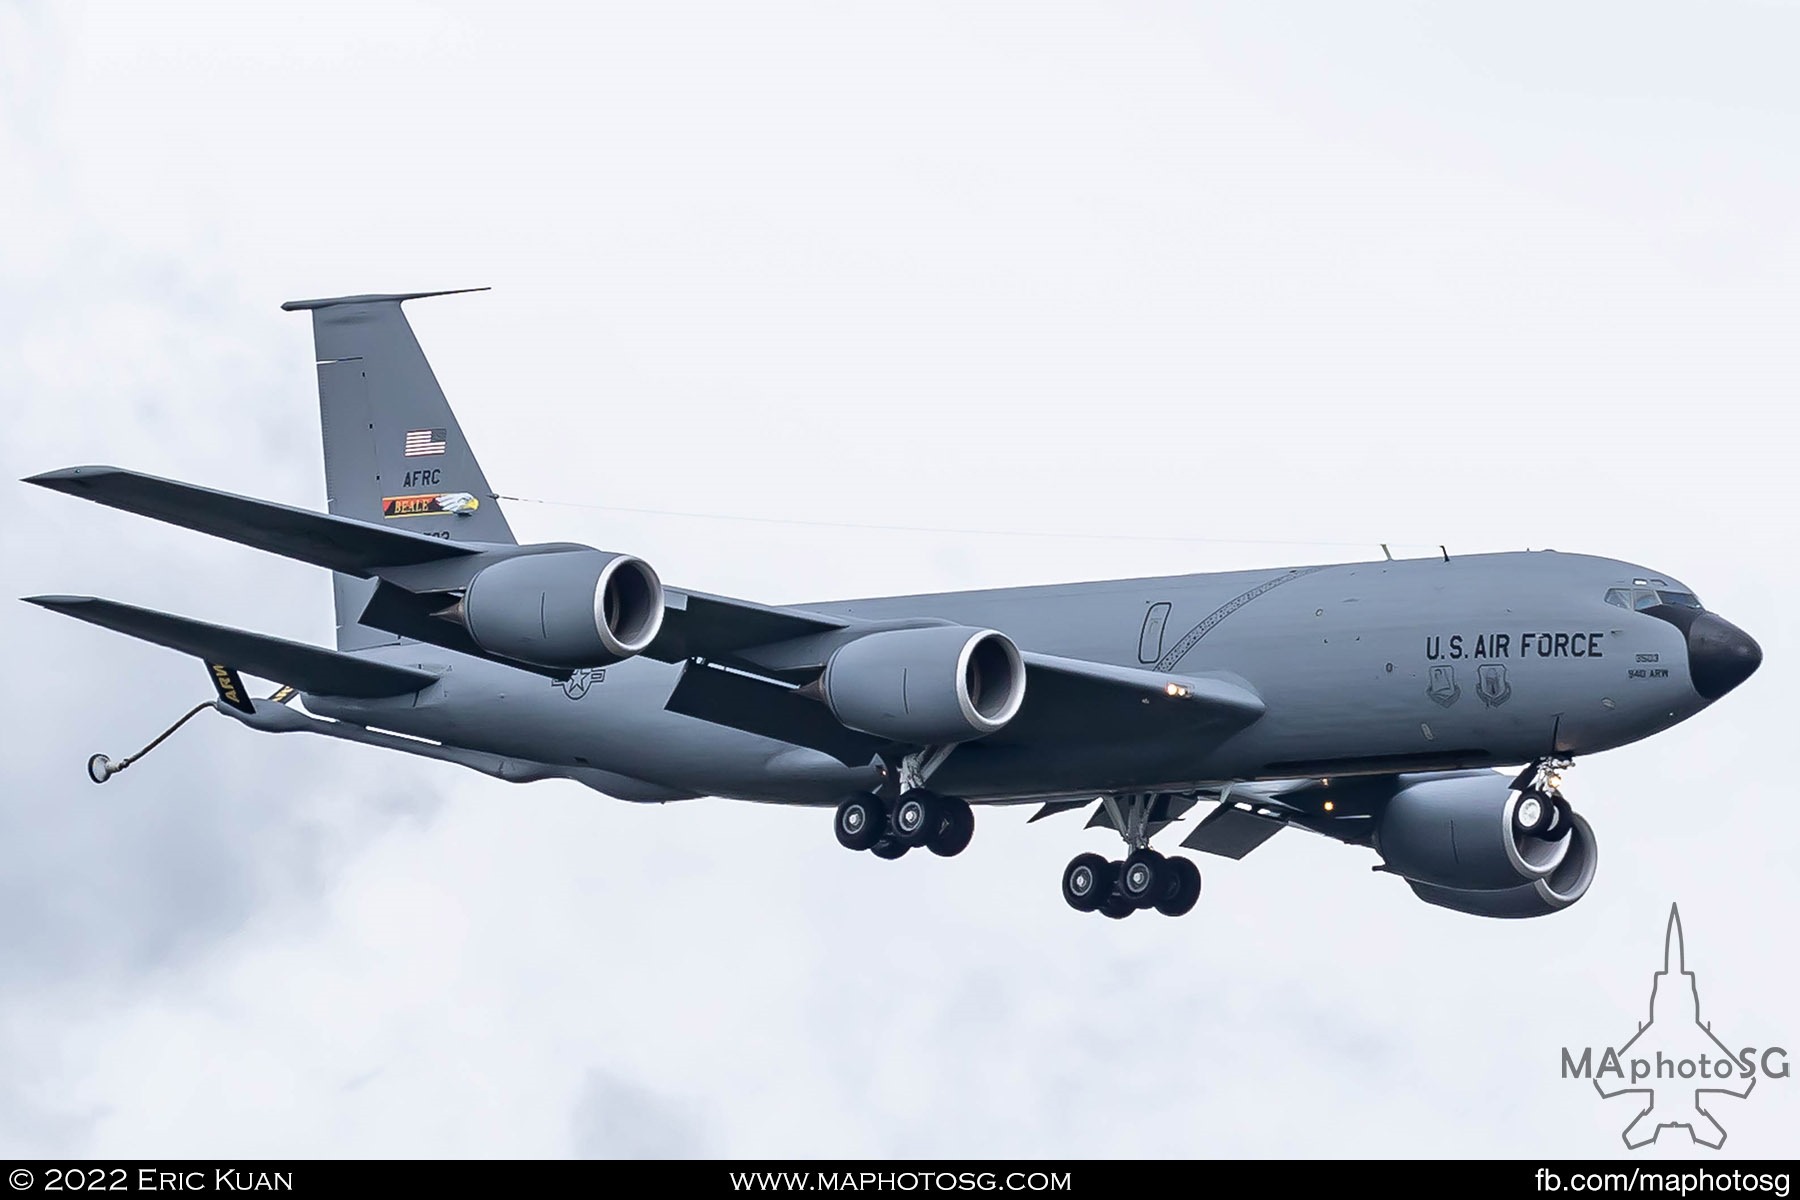 8 Feb 2022: RCH061, 62-3503, 940TH ARW, Boeing KC-135R